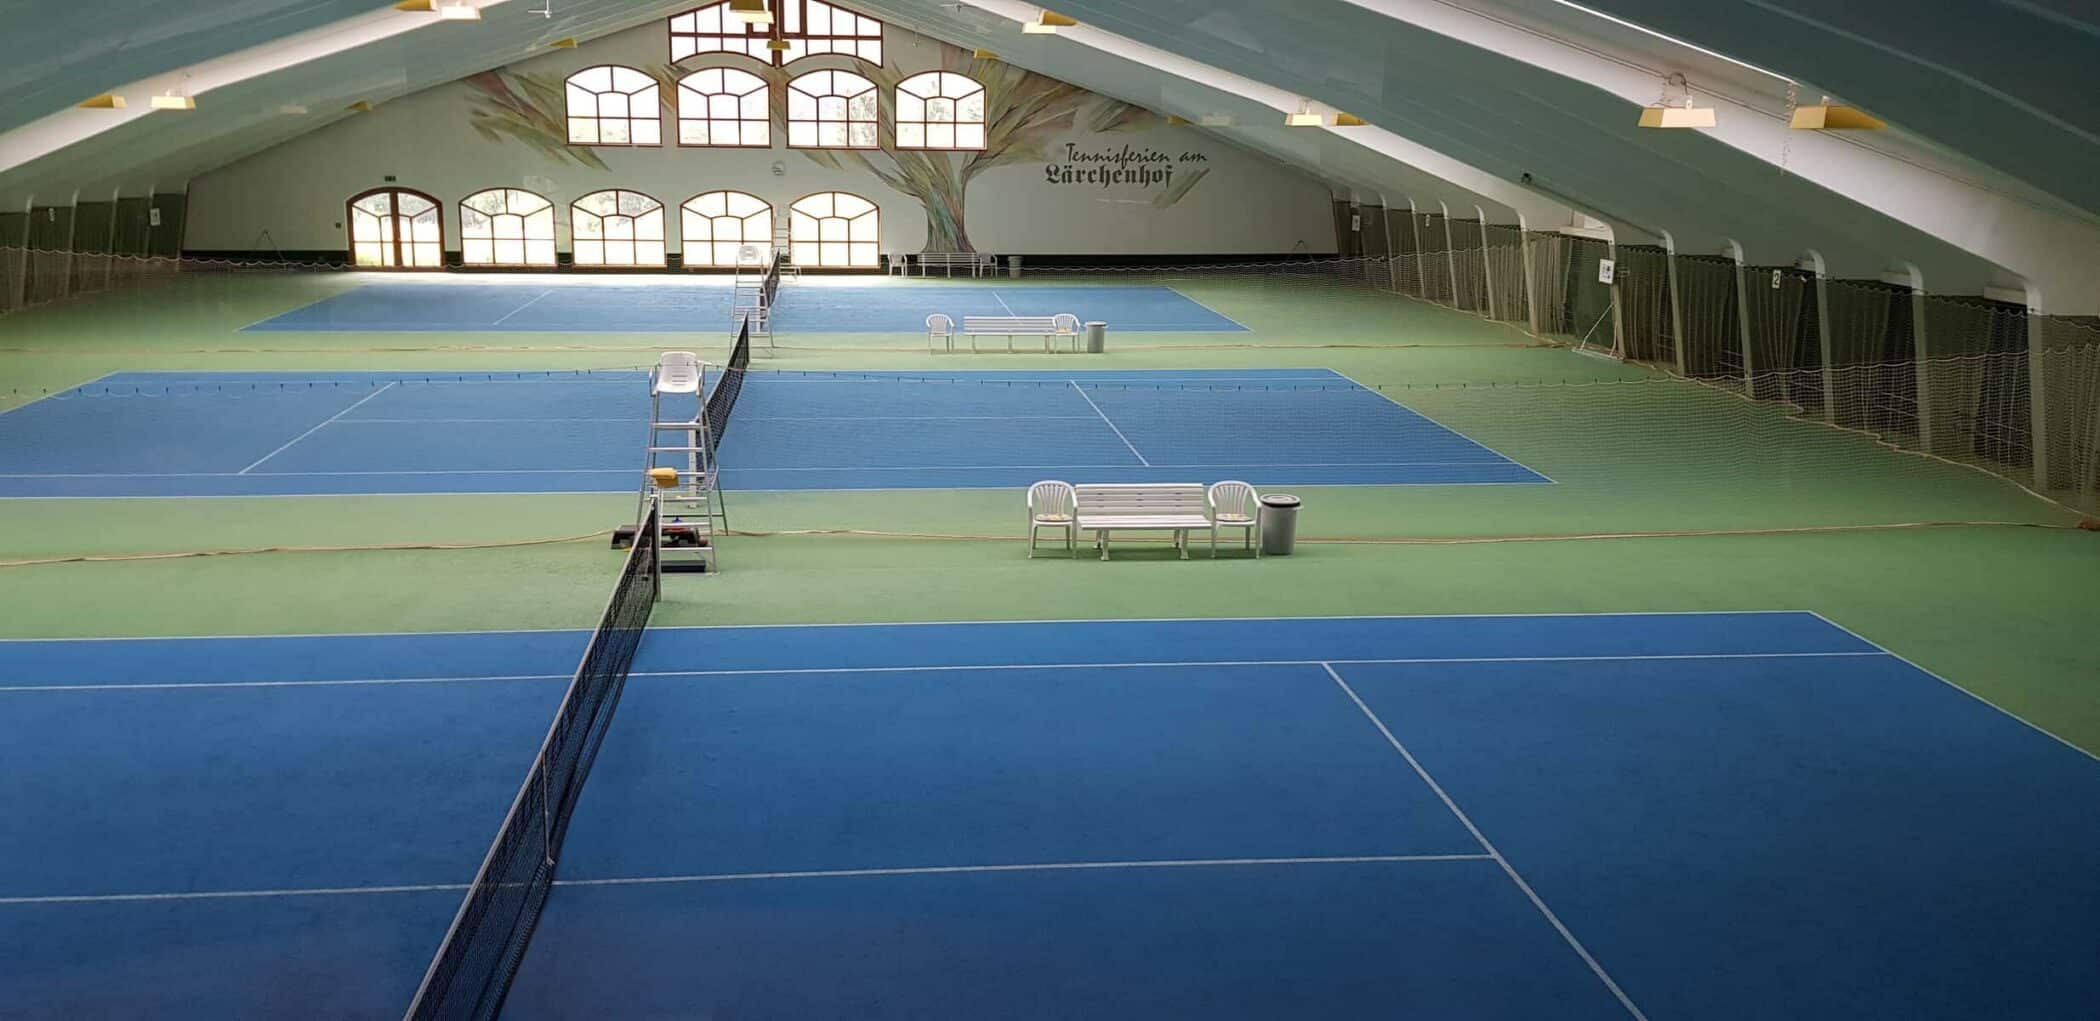 Lärchenhof har flere tennisbaner ude og inde med forskelligt underlag. Her indoor tennis. Her den smukke indendørs tennishal lige ved siden af work out afdelingen